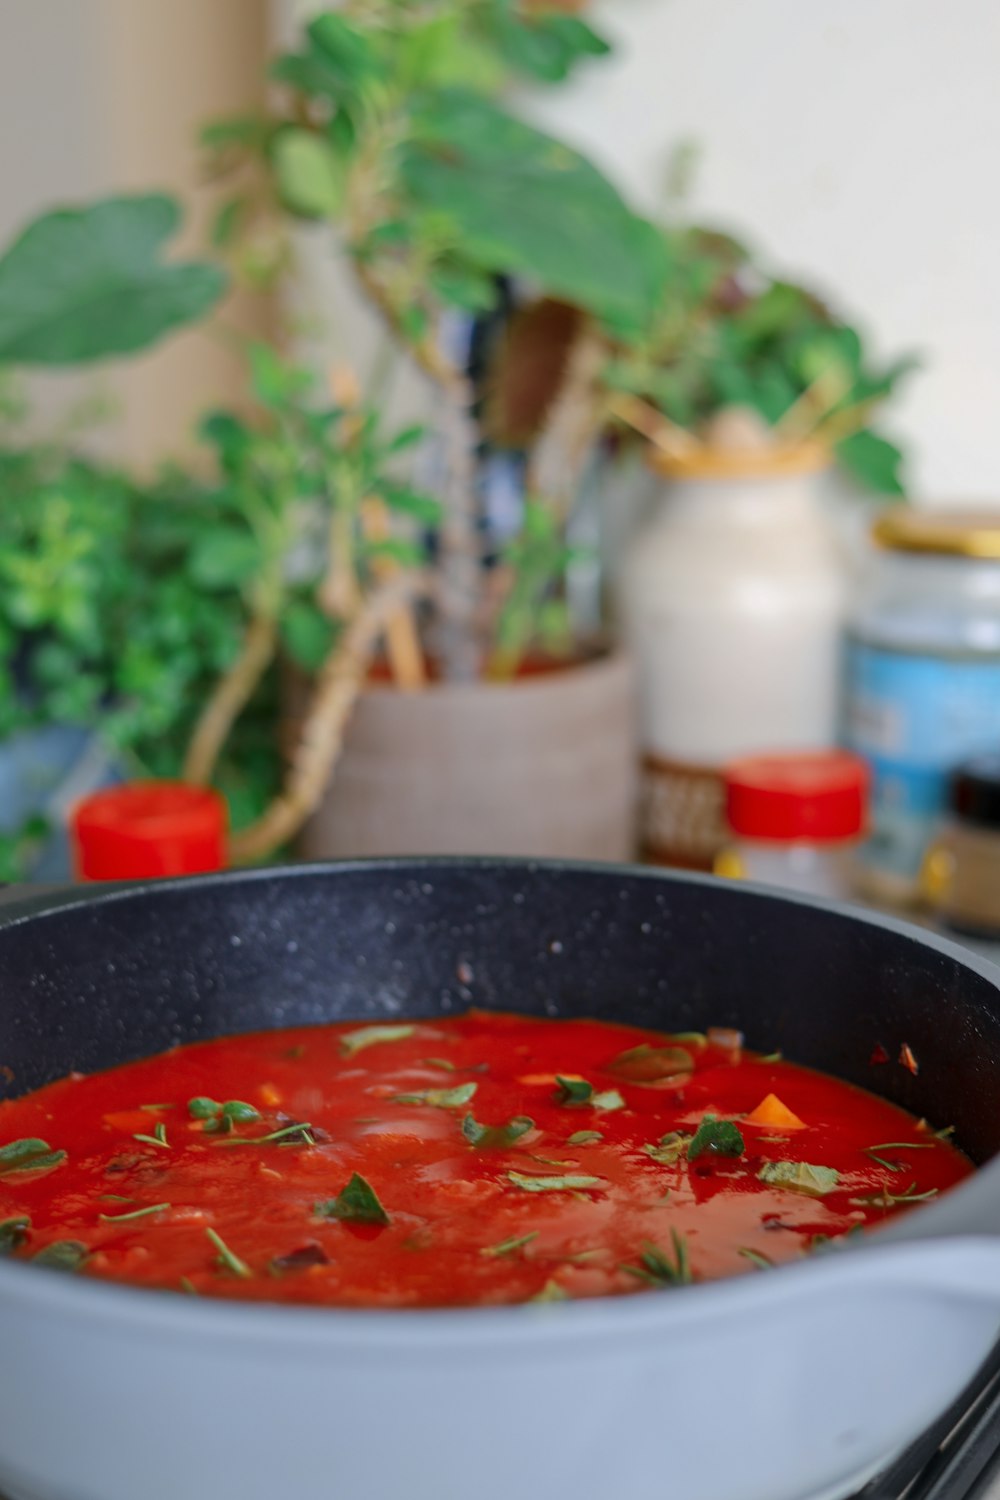 黒い陶器のボウルに入った赤いスープ